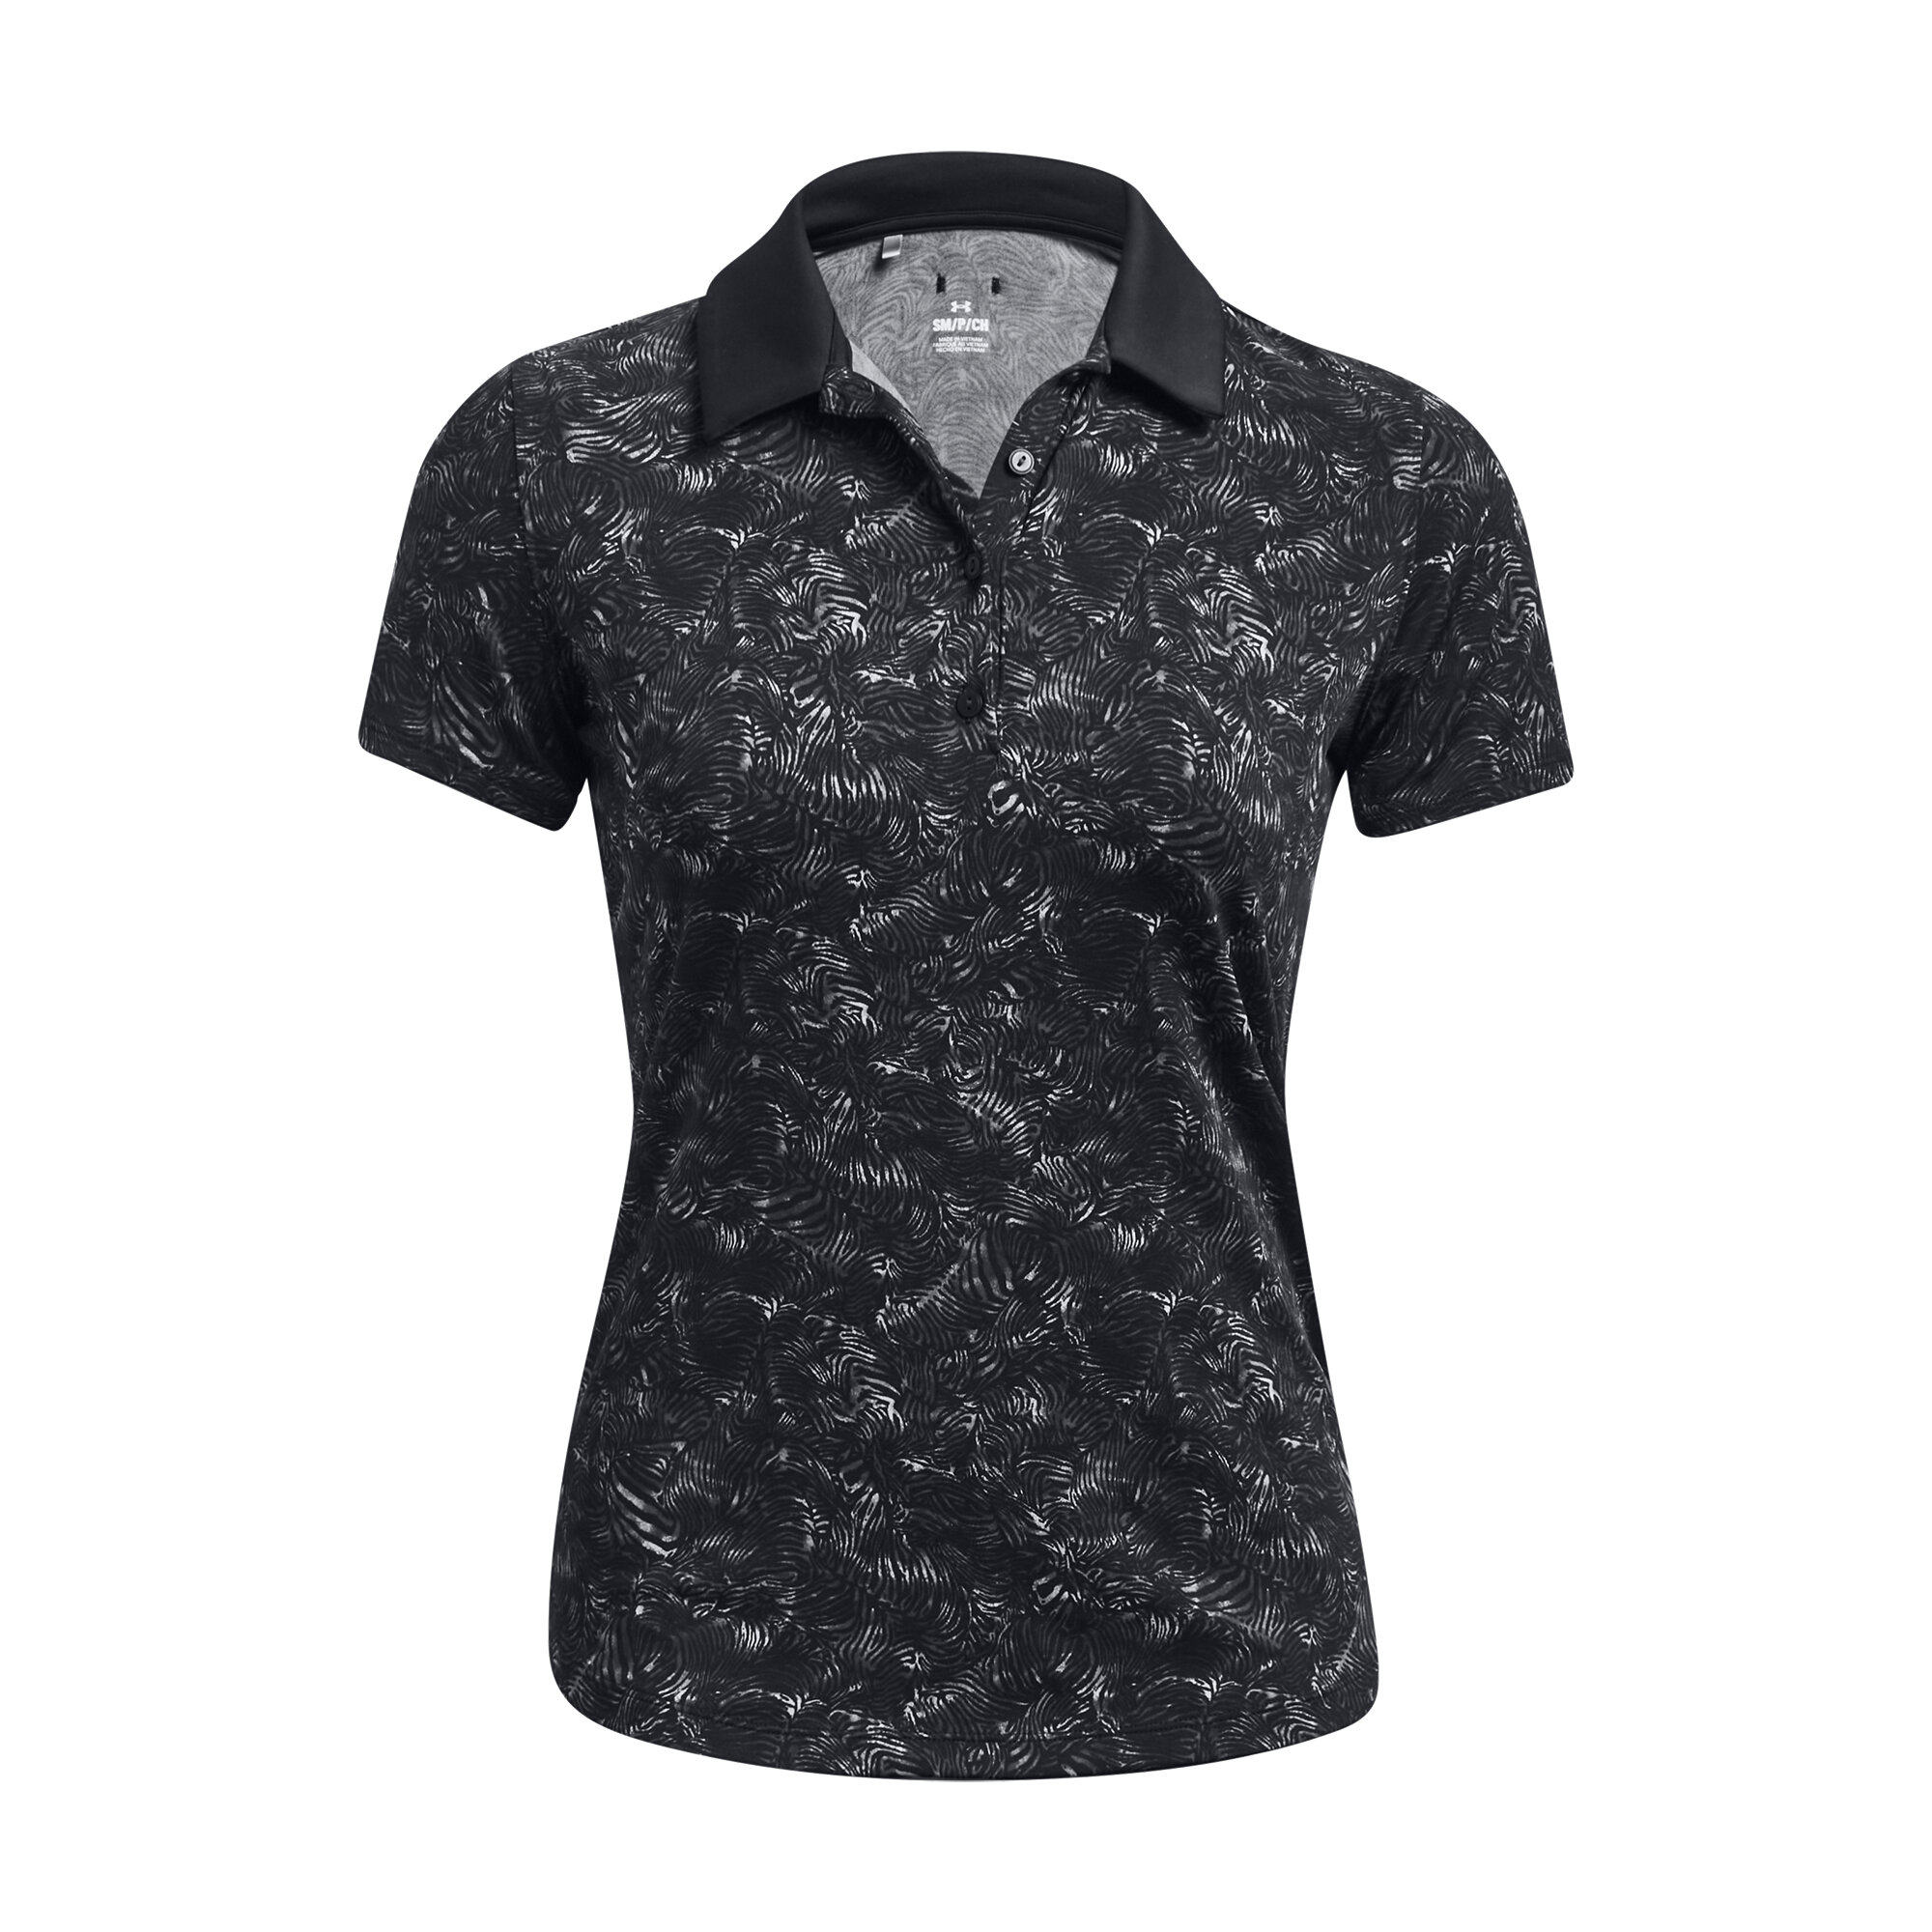 Under Armour Playoff Printed SS dámské golfové triko, černé, vel. S